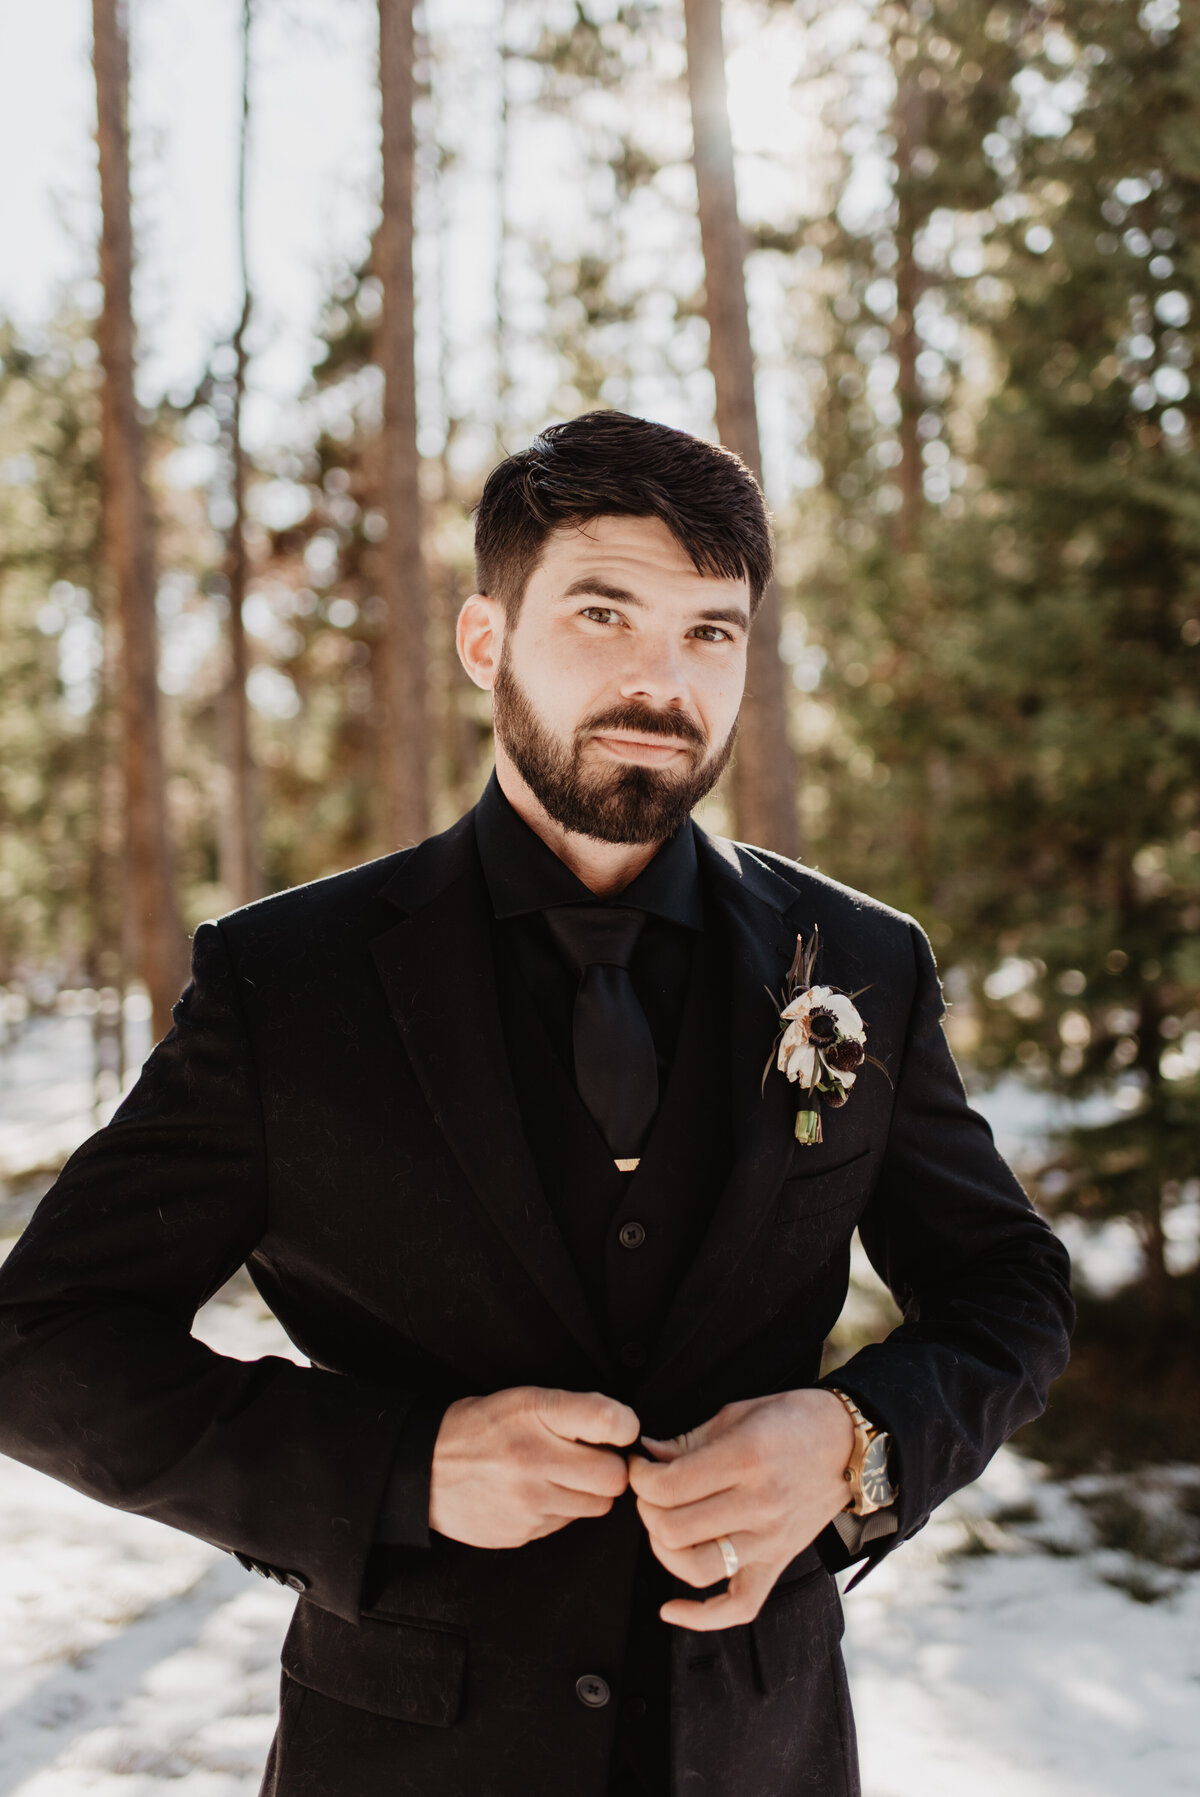 Jackson Hole Photographers capture groom buttoning jacket